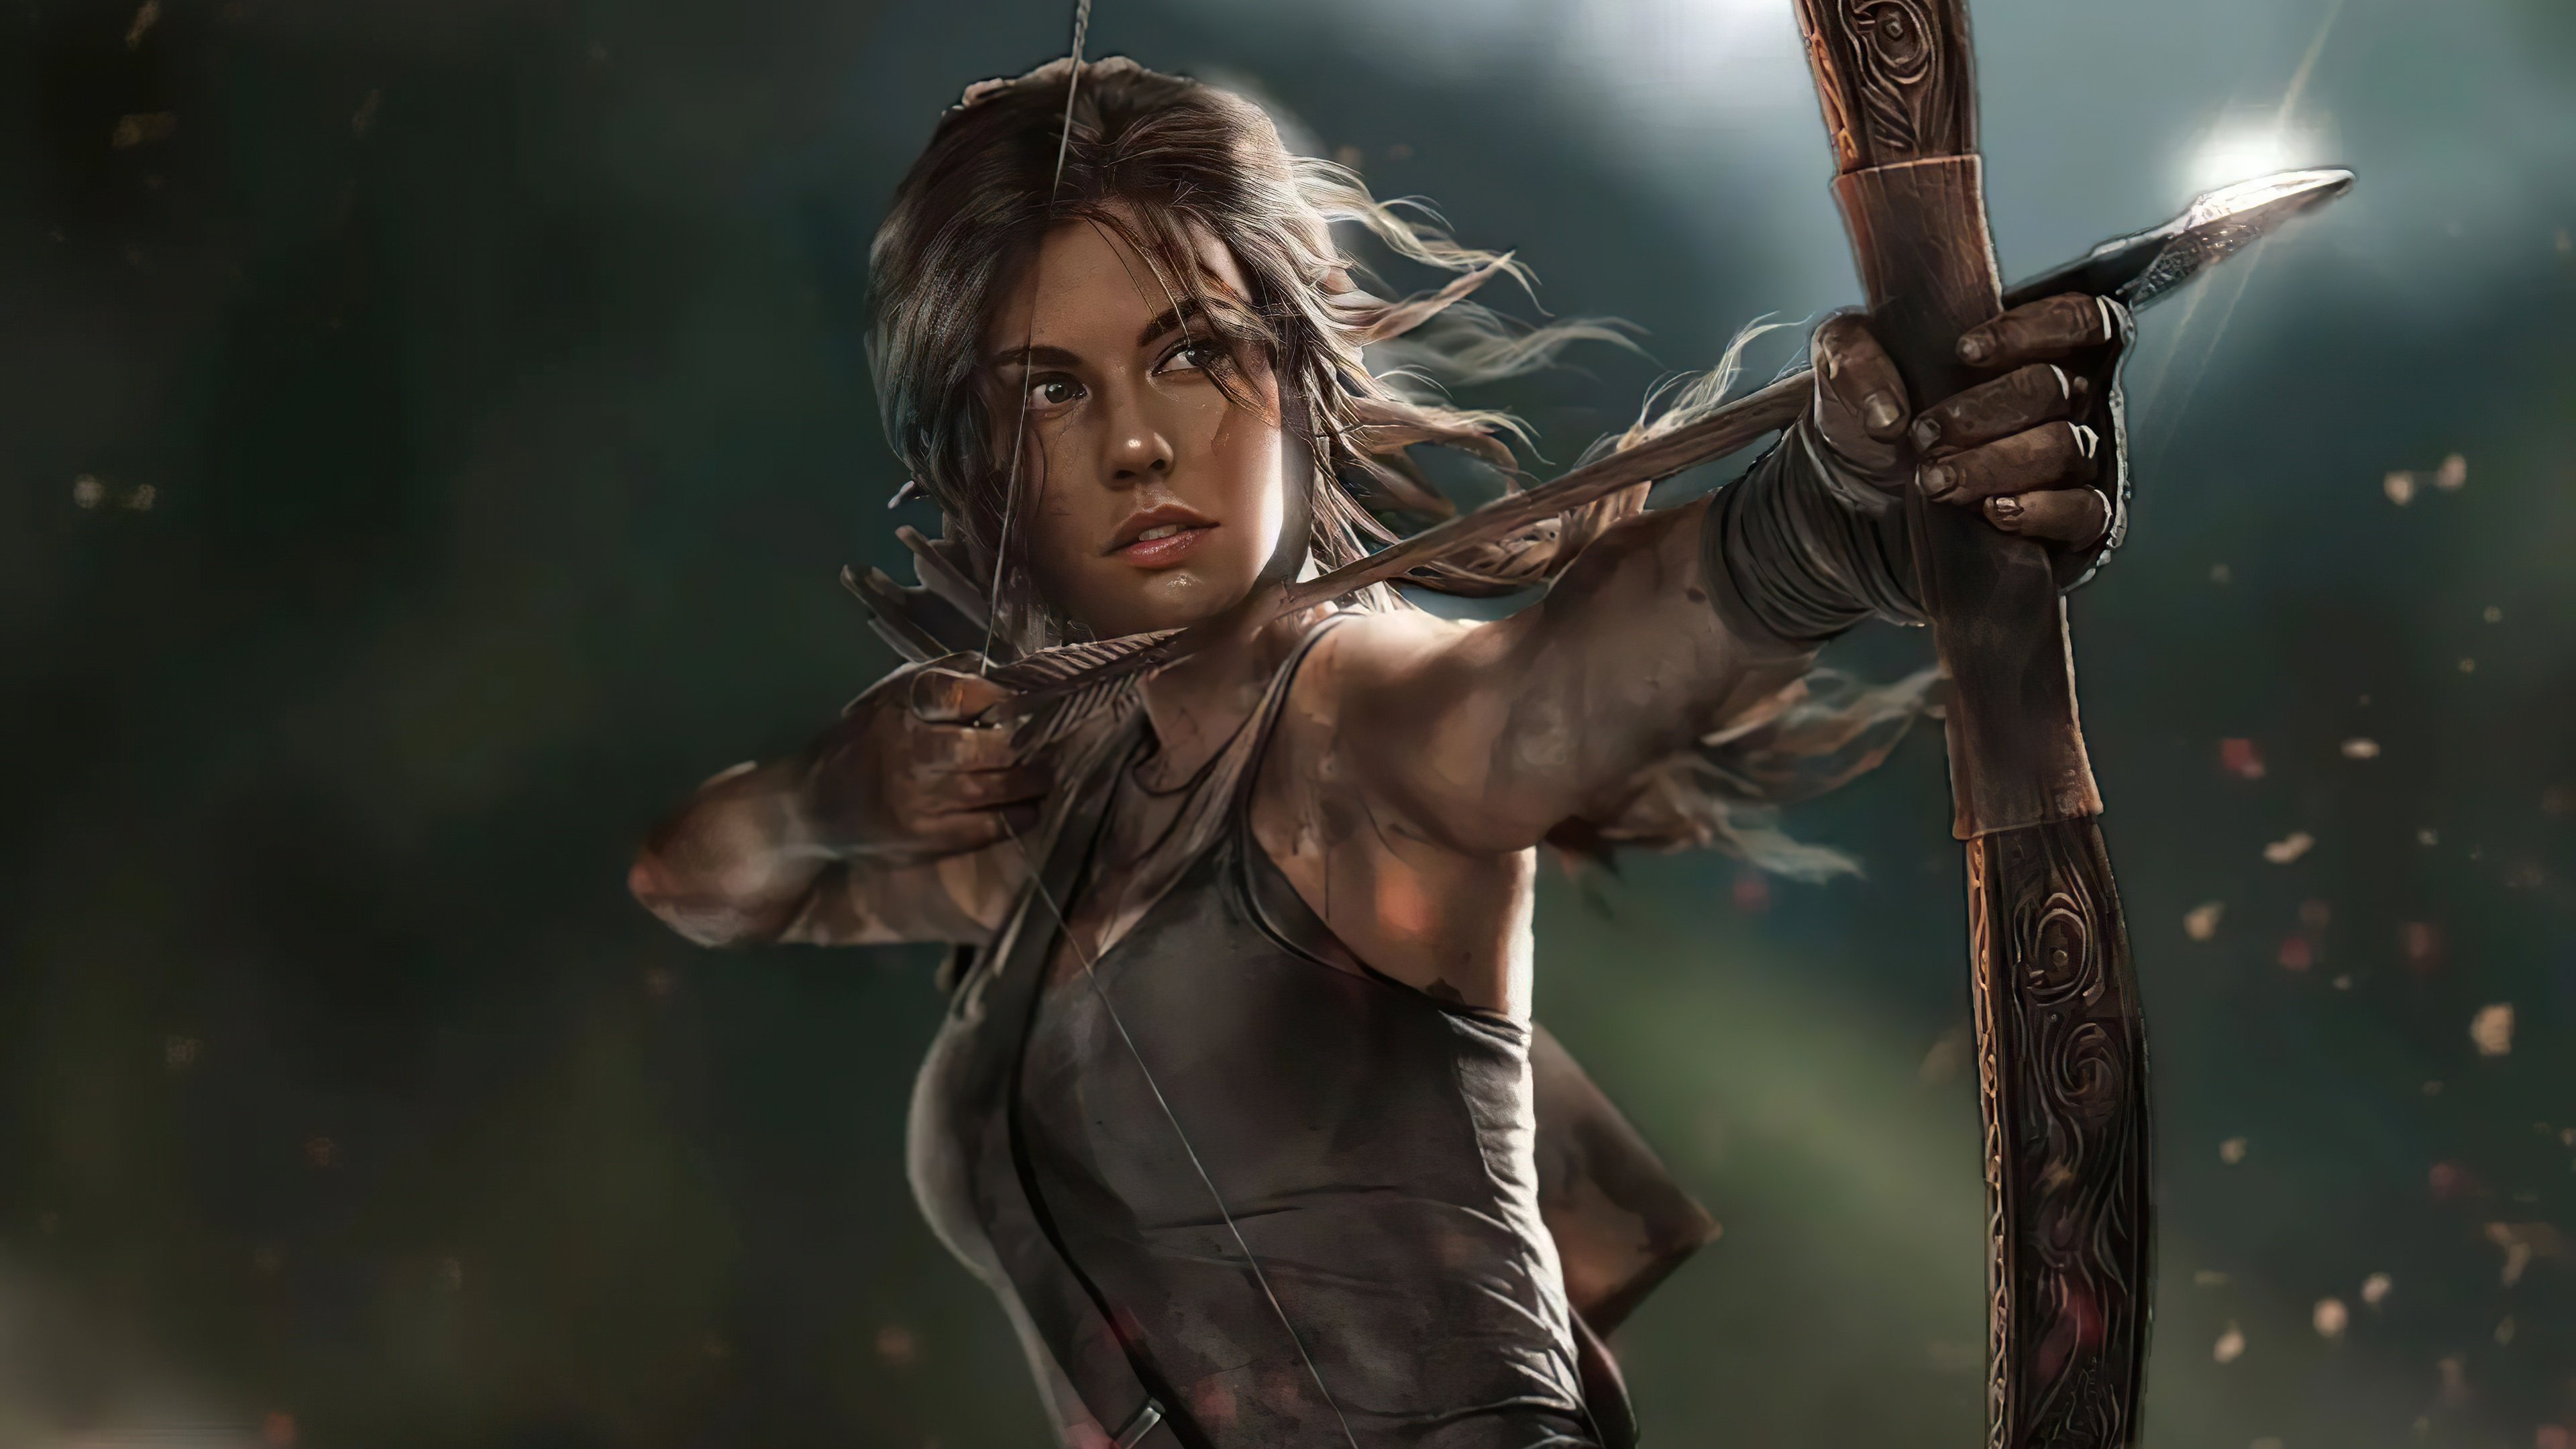 Fondos de pantalla Lauren Cohan como Lara Croft The Tomb Raider